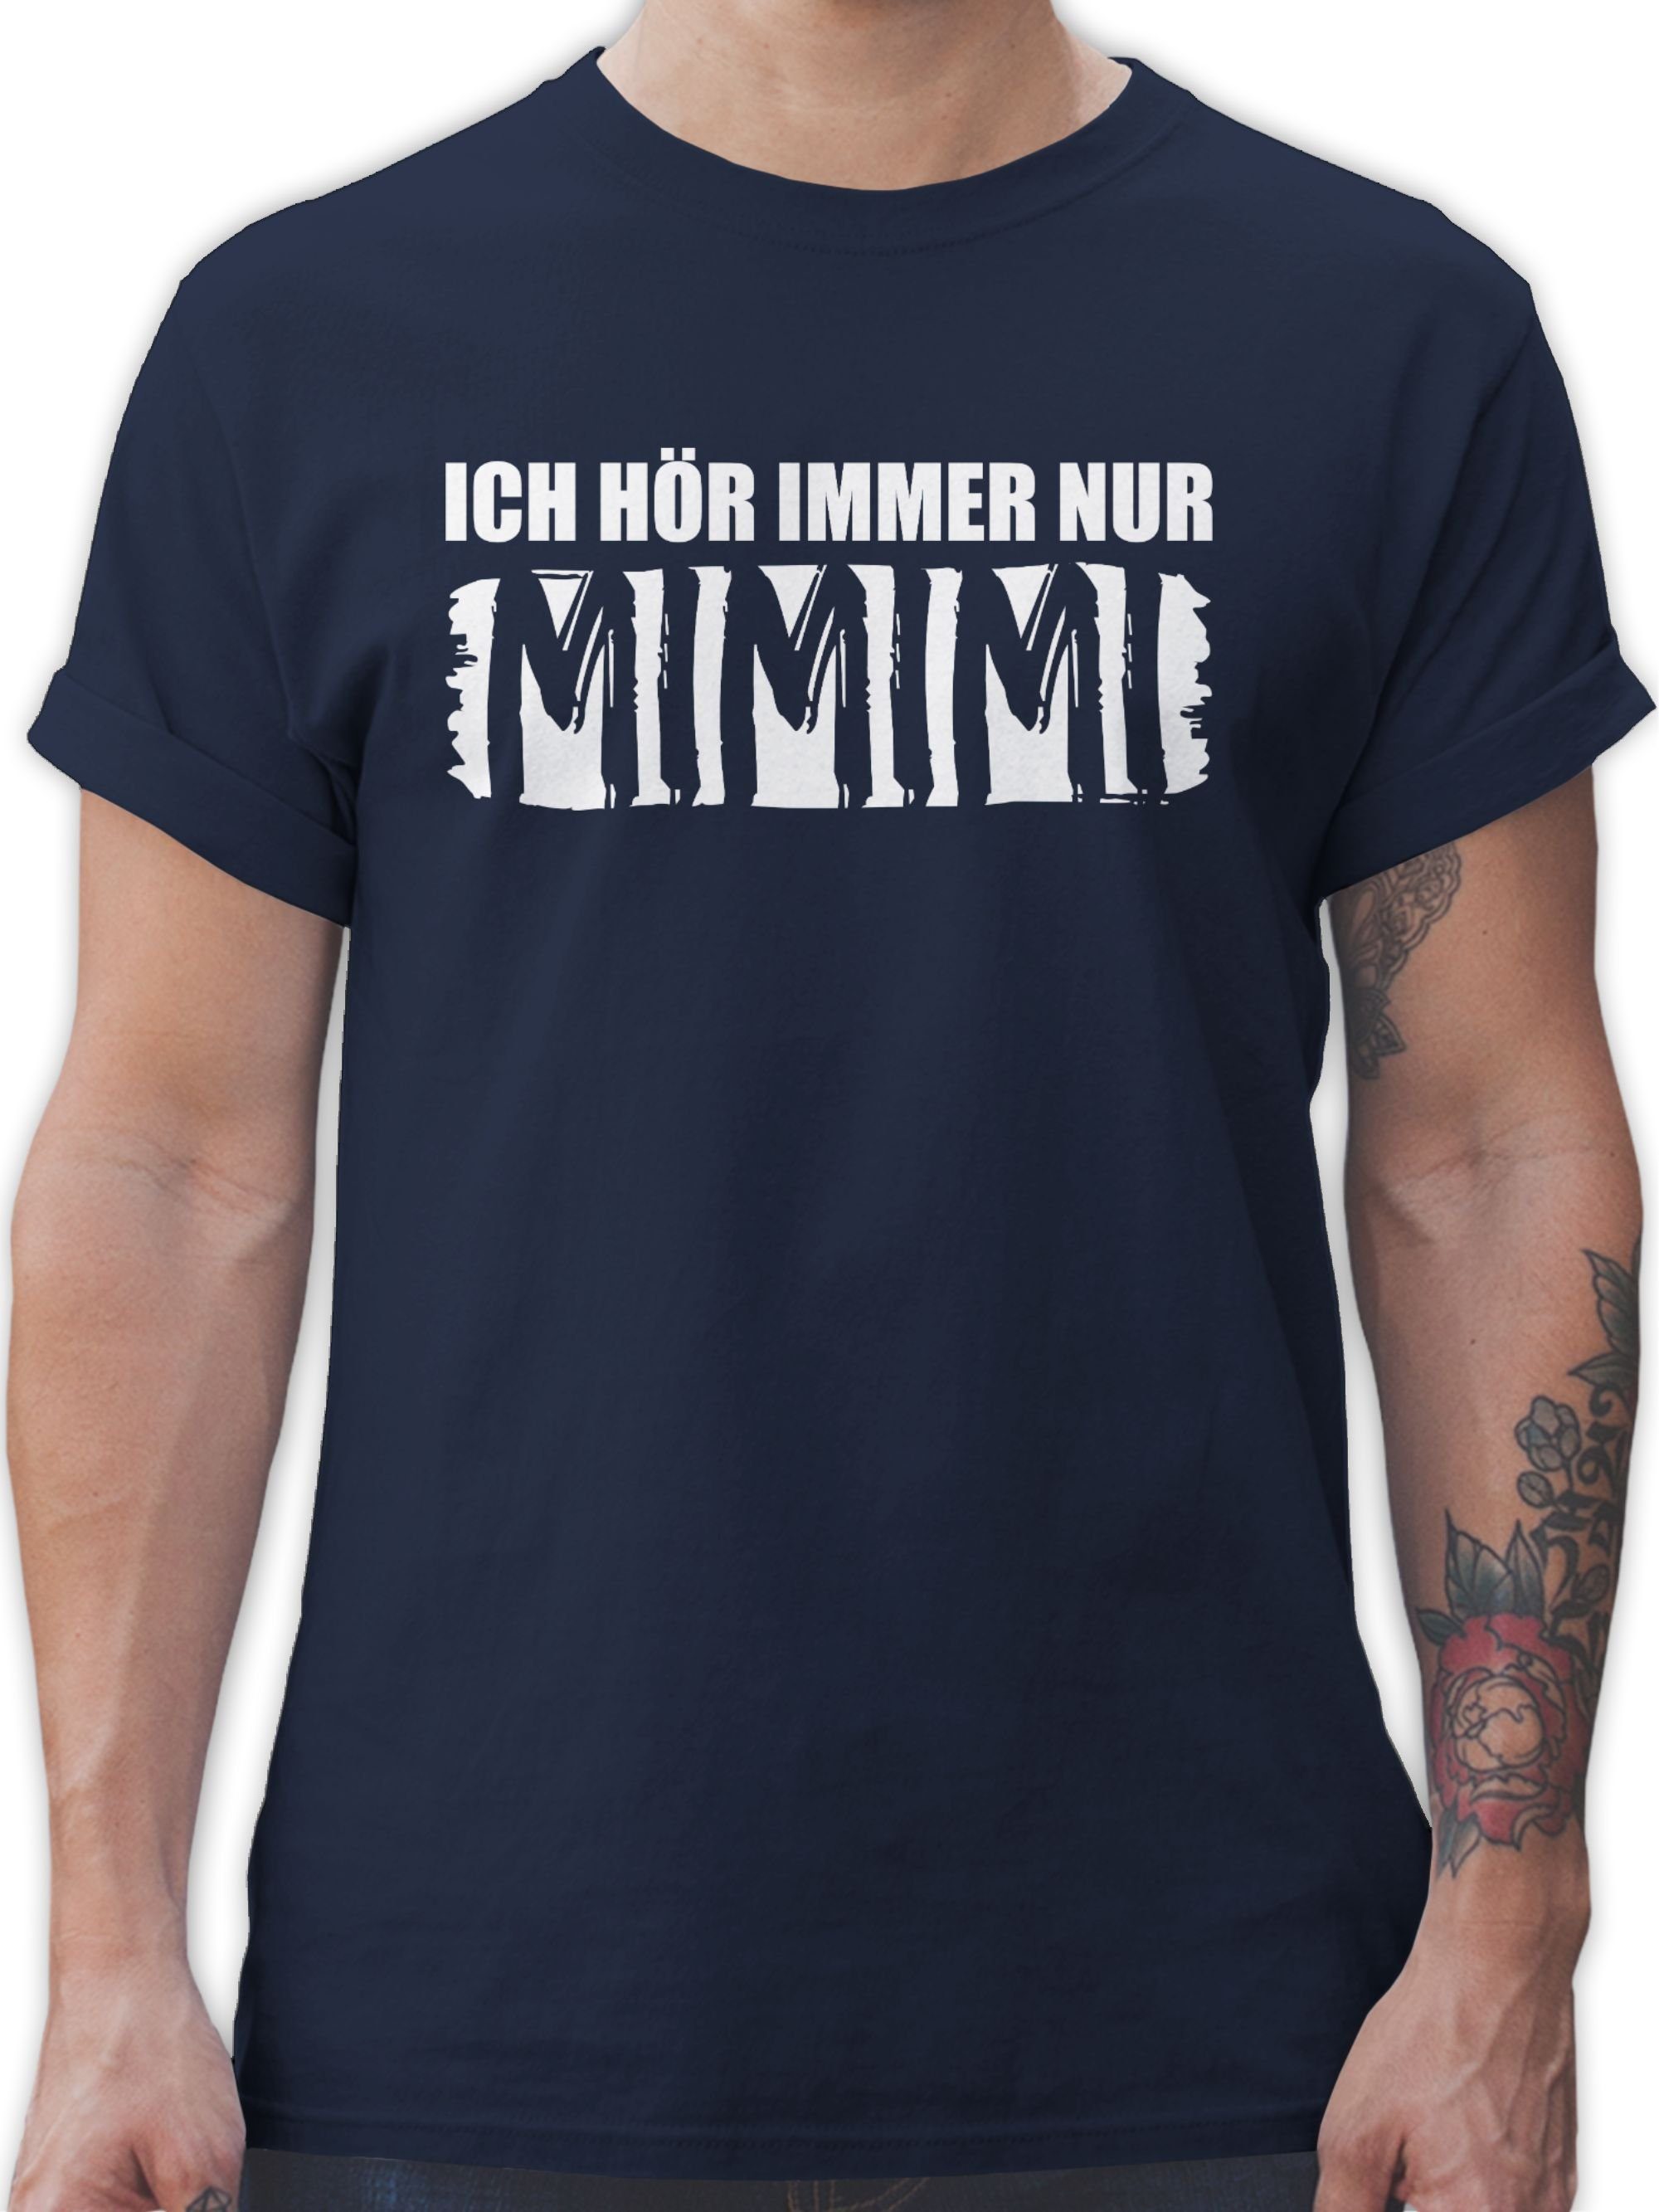 Höre T-Shirt Navy 02 Blau mit Sprüche Shirtracer nur MIMIMI Statement Spruch